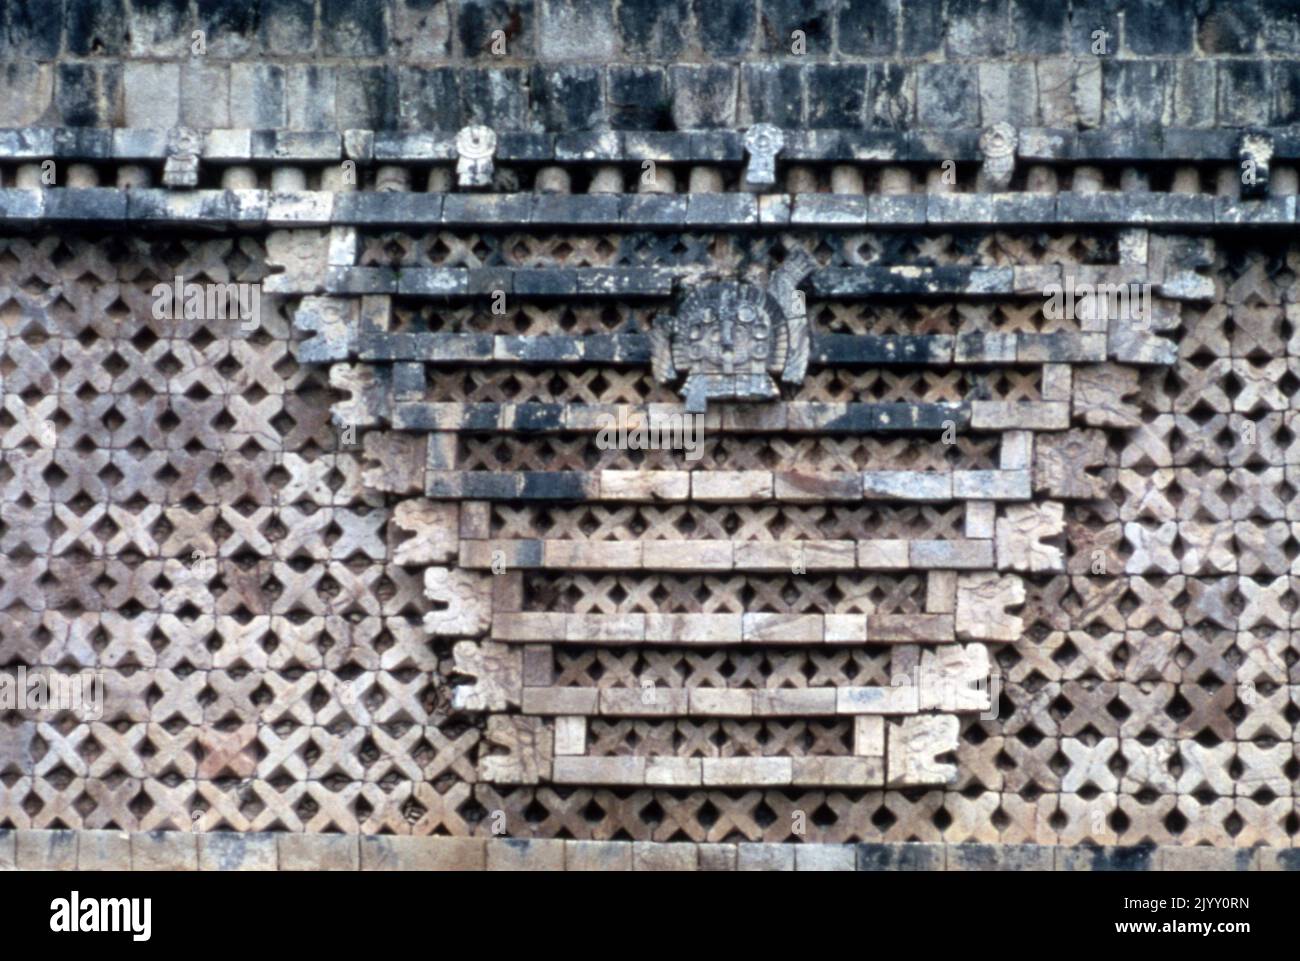 La ville d'Uxmal, ancienne ville maya de l'époque classique du Mexique actuel, est considérée comme l'un des plus importants sites archéologiques de la culture maya. Le bâtiment est typique du style Puuc, avec des murs bas lisses qui s'ouvrent sur des frises ornées. La plupart des travaux majeurs de la ville ont eu lieu alors qu'Uxmal était la capitale d'un État Maya Classique vers 850-925 après J.-C. Après environ 1000 ans après J.-C., Toltec envahisseurs a pris la relève. Le Nunnery Quadrangle (un surnom donné par les Espagnols; c'était un palais du gouvernement) est le plus beau des plusieurs beaux quadrangles d'Uxmal de longs bâtiments. Il a elabo Banque D'Images